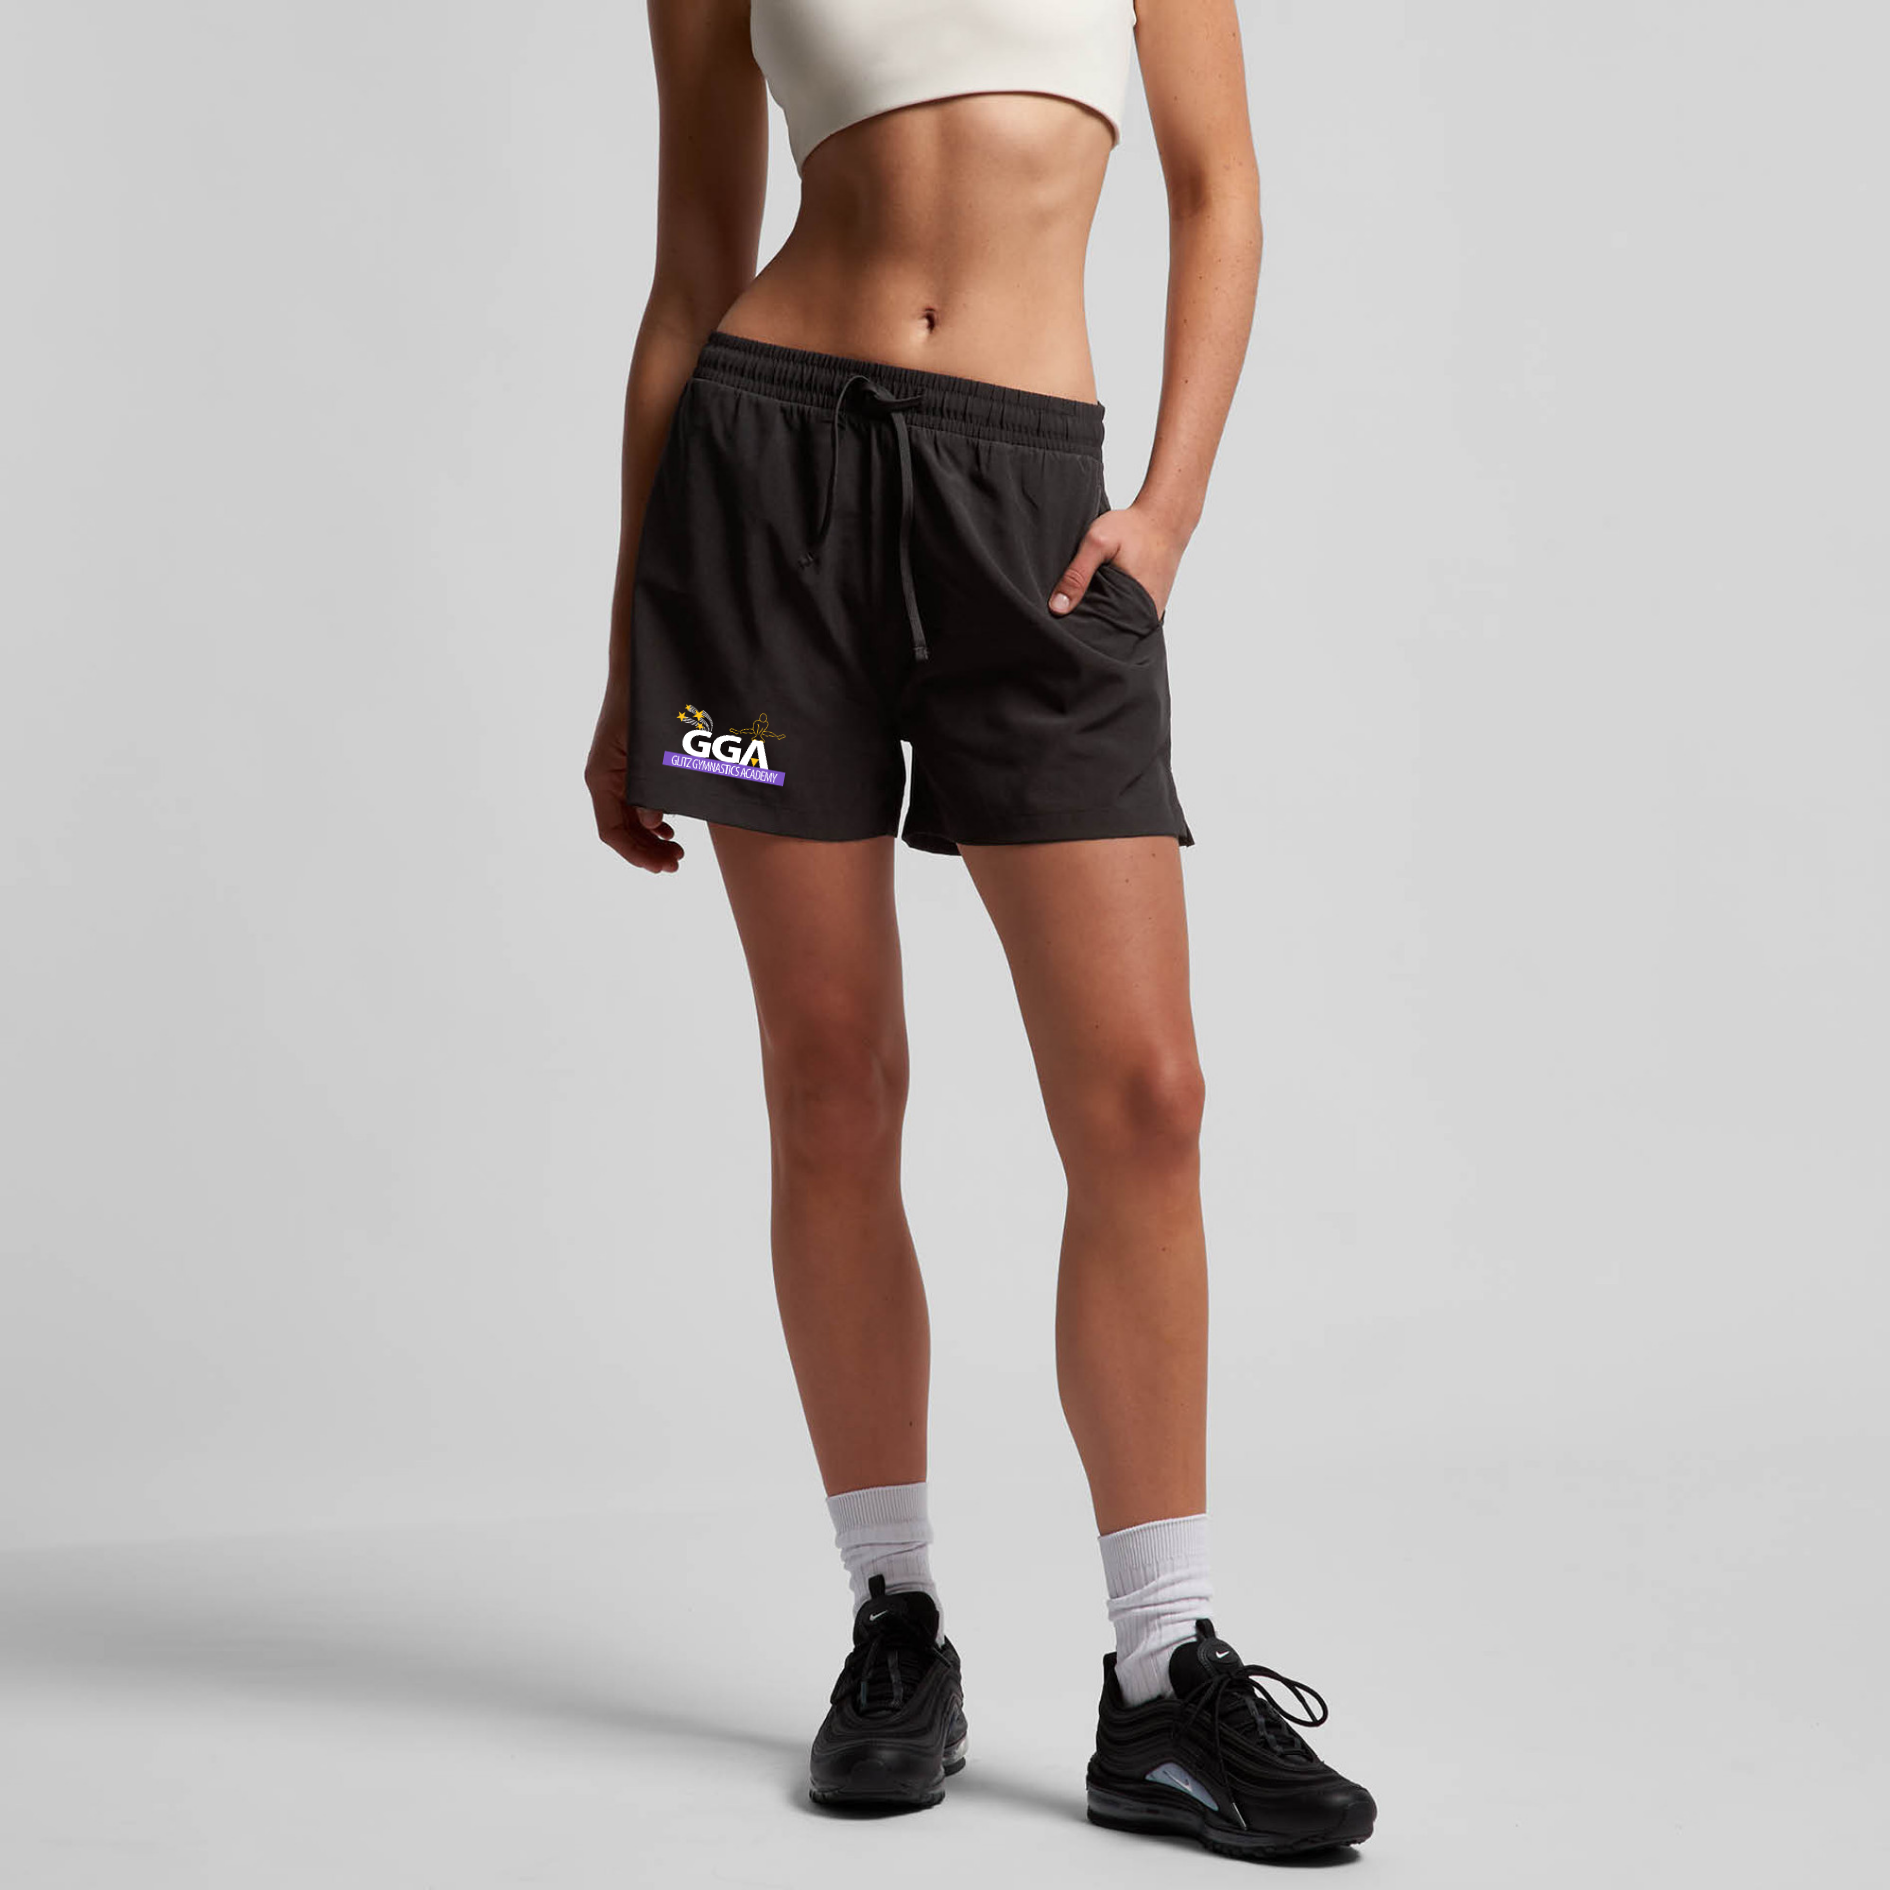 GLITZ Womens sports shorts